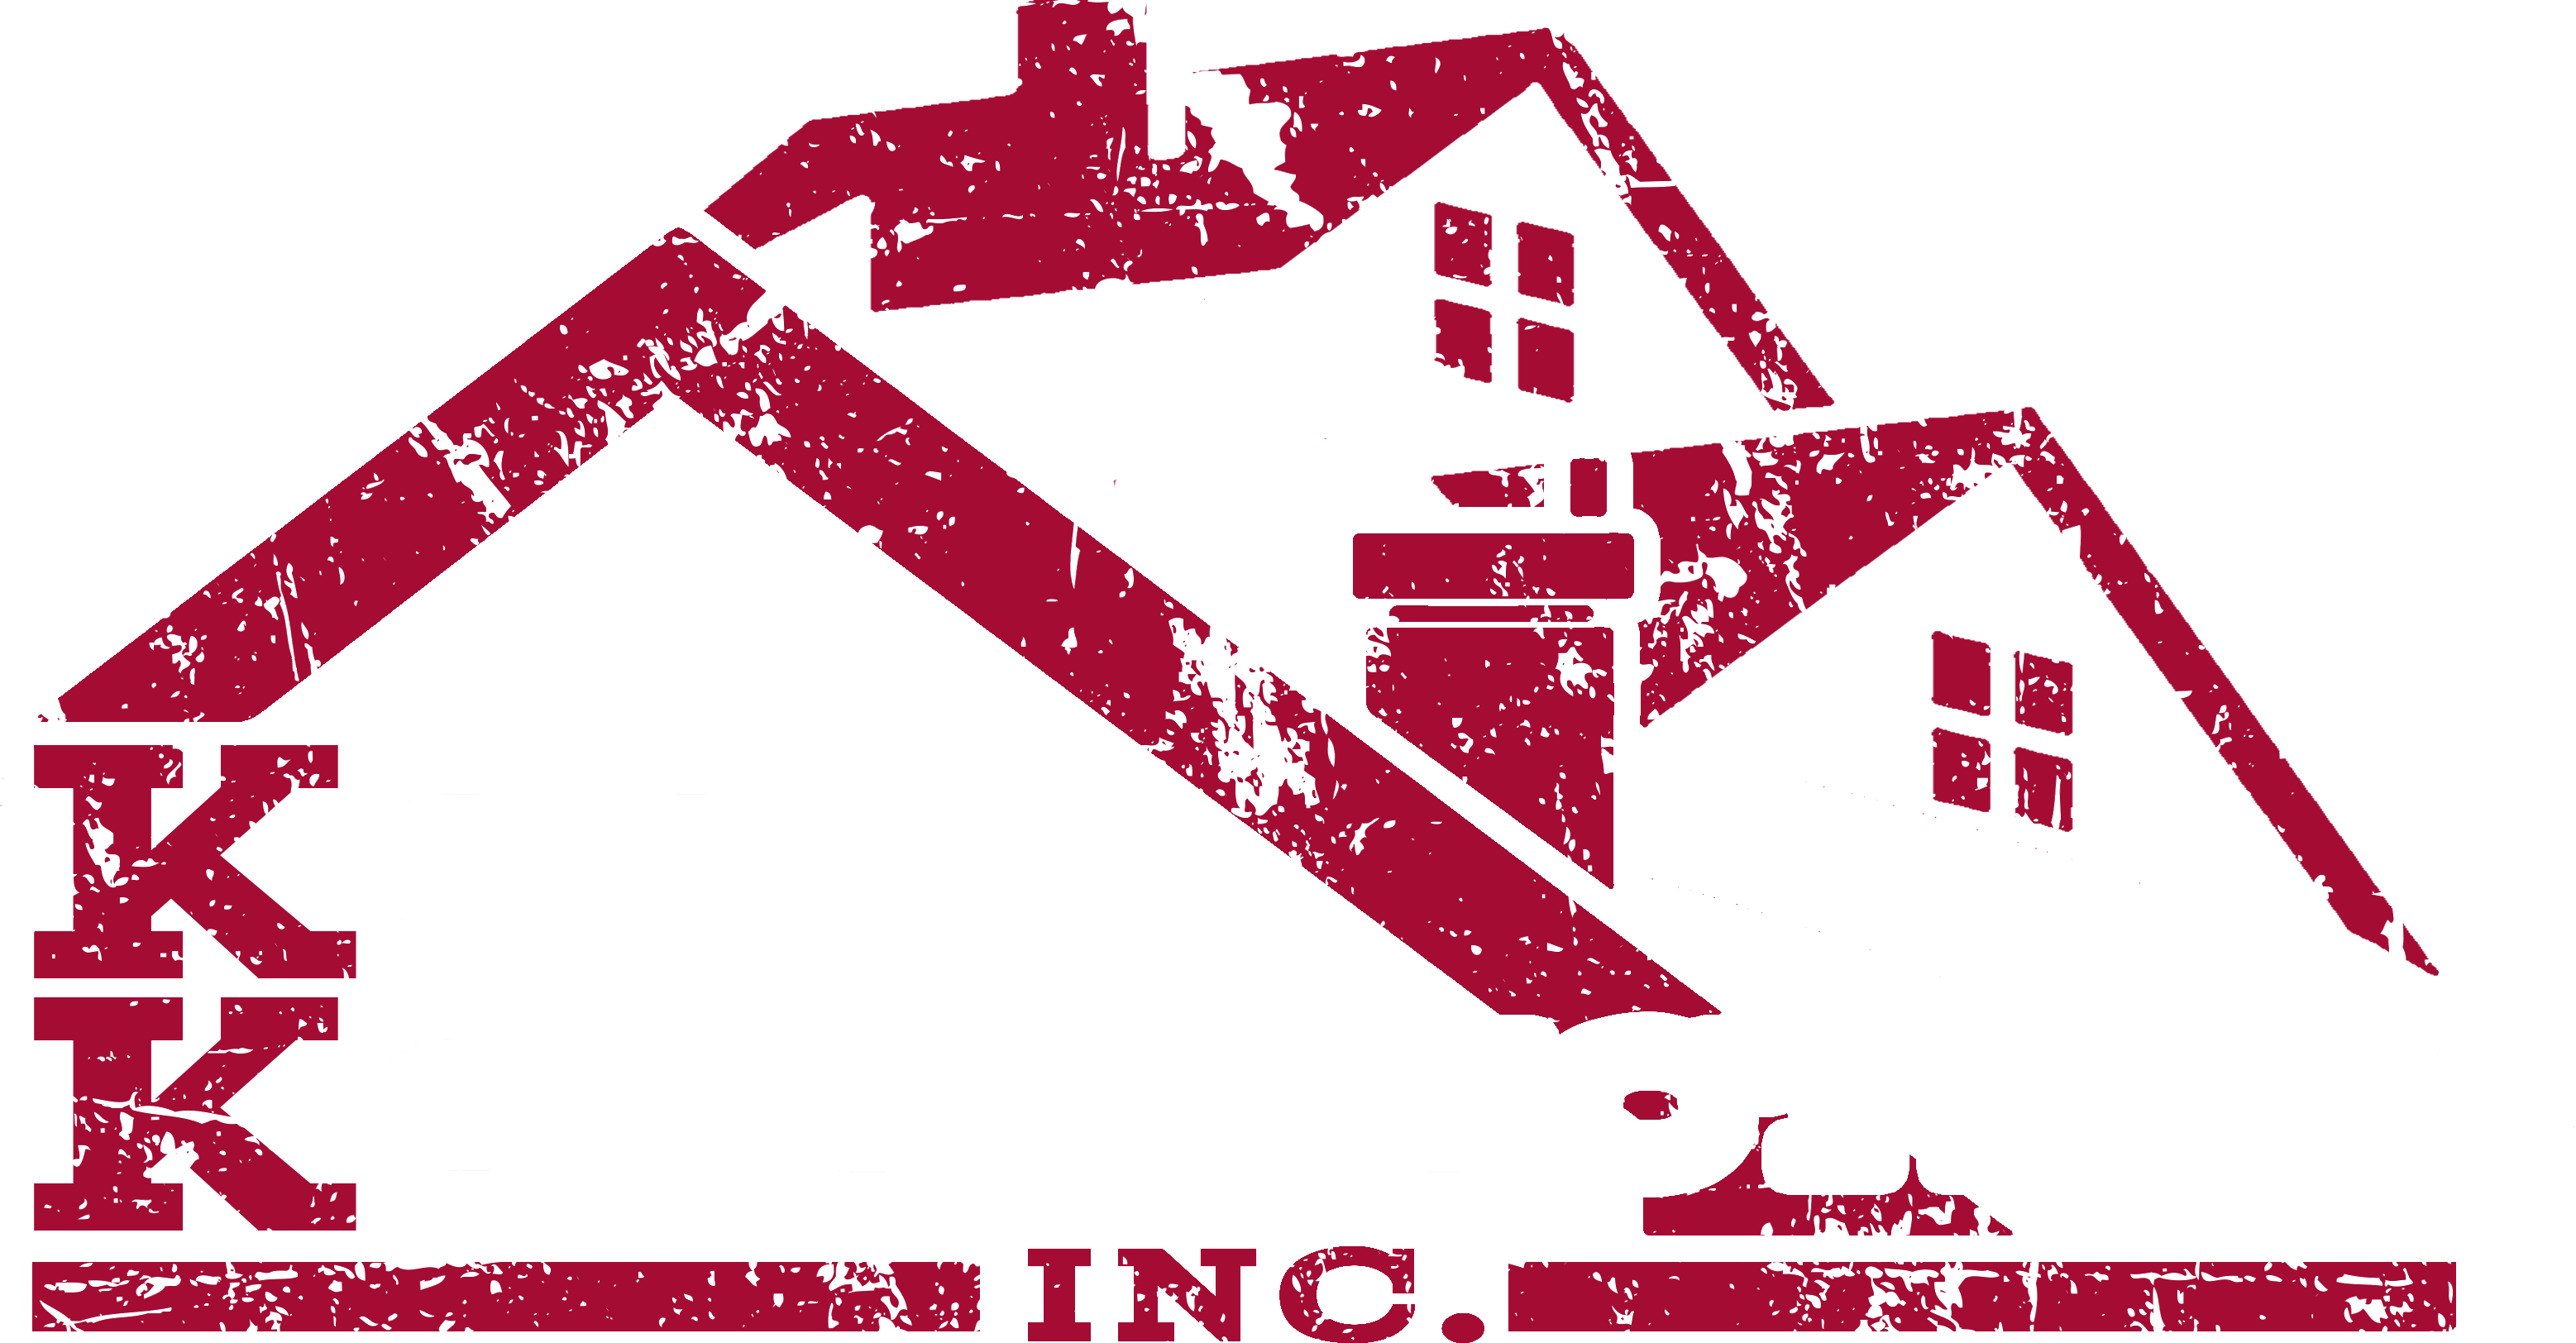 Koch Konstruction Logo